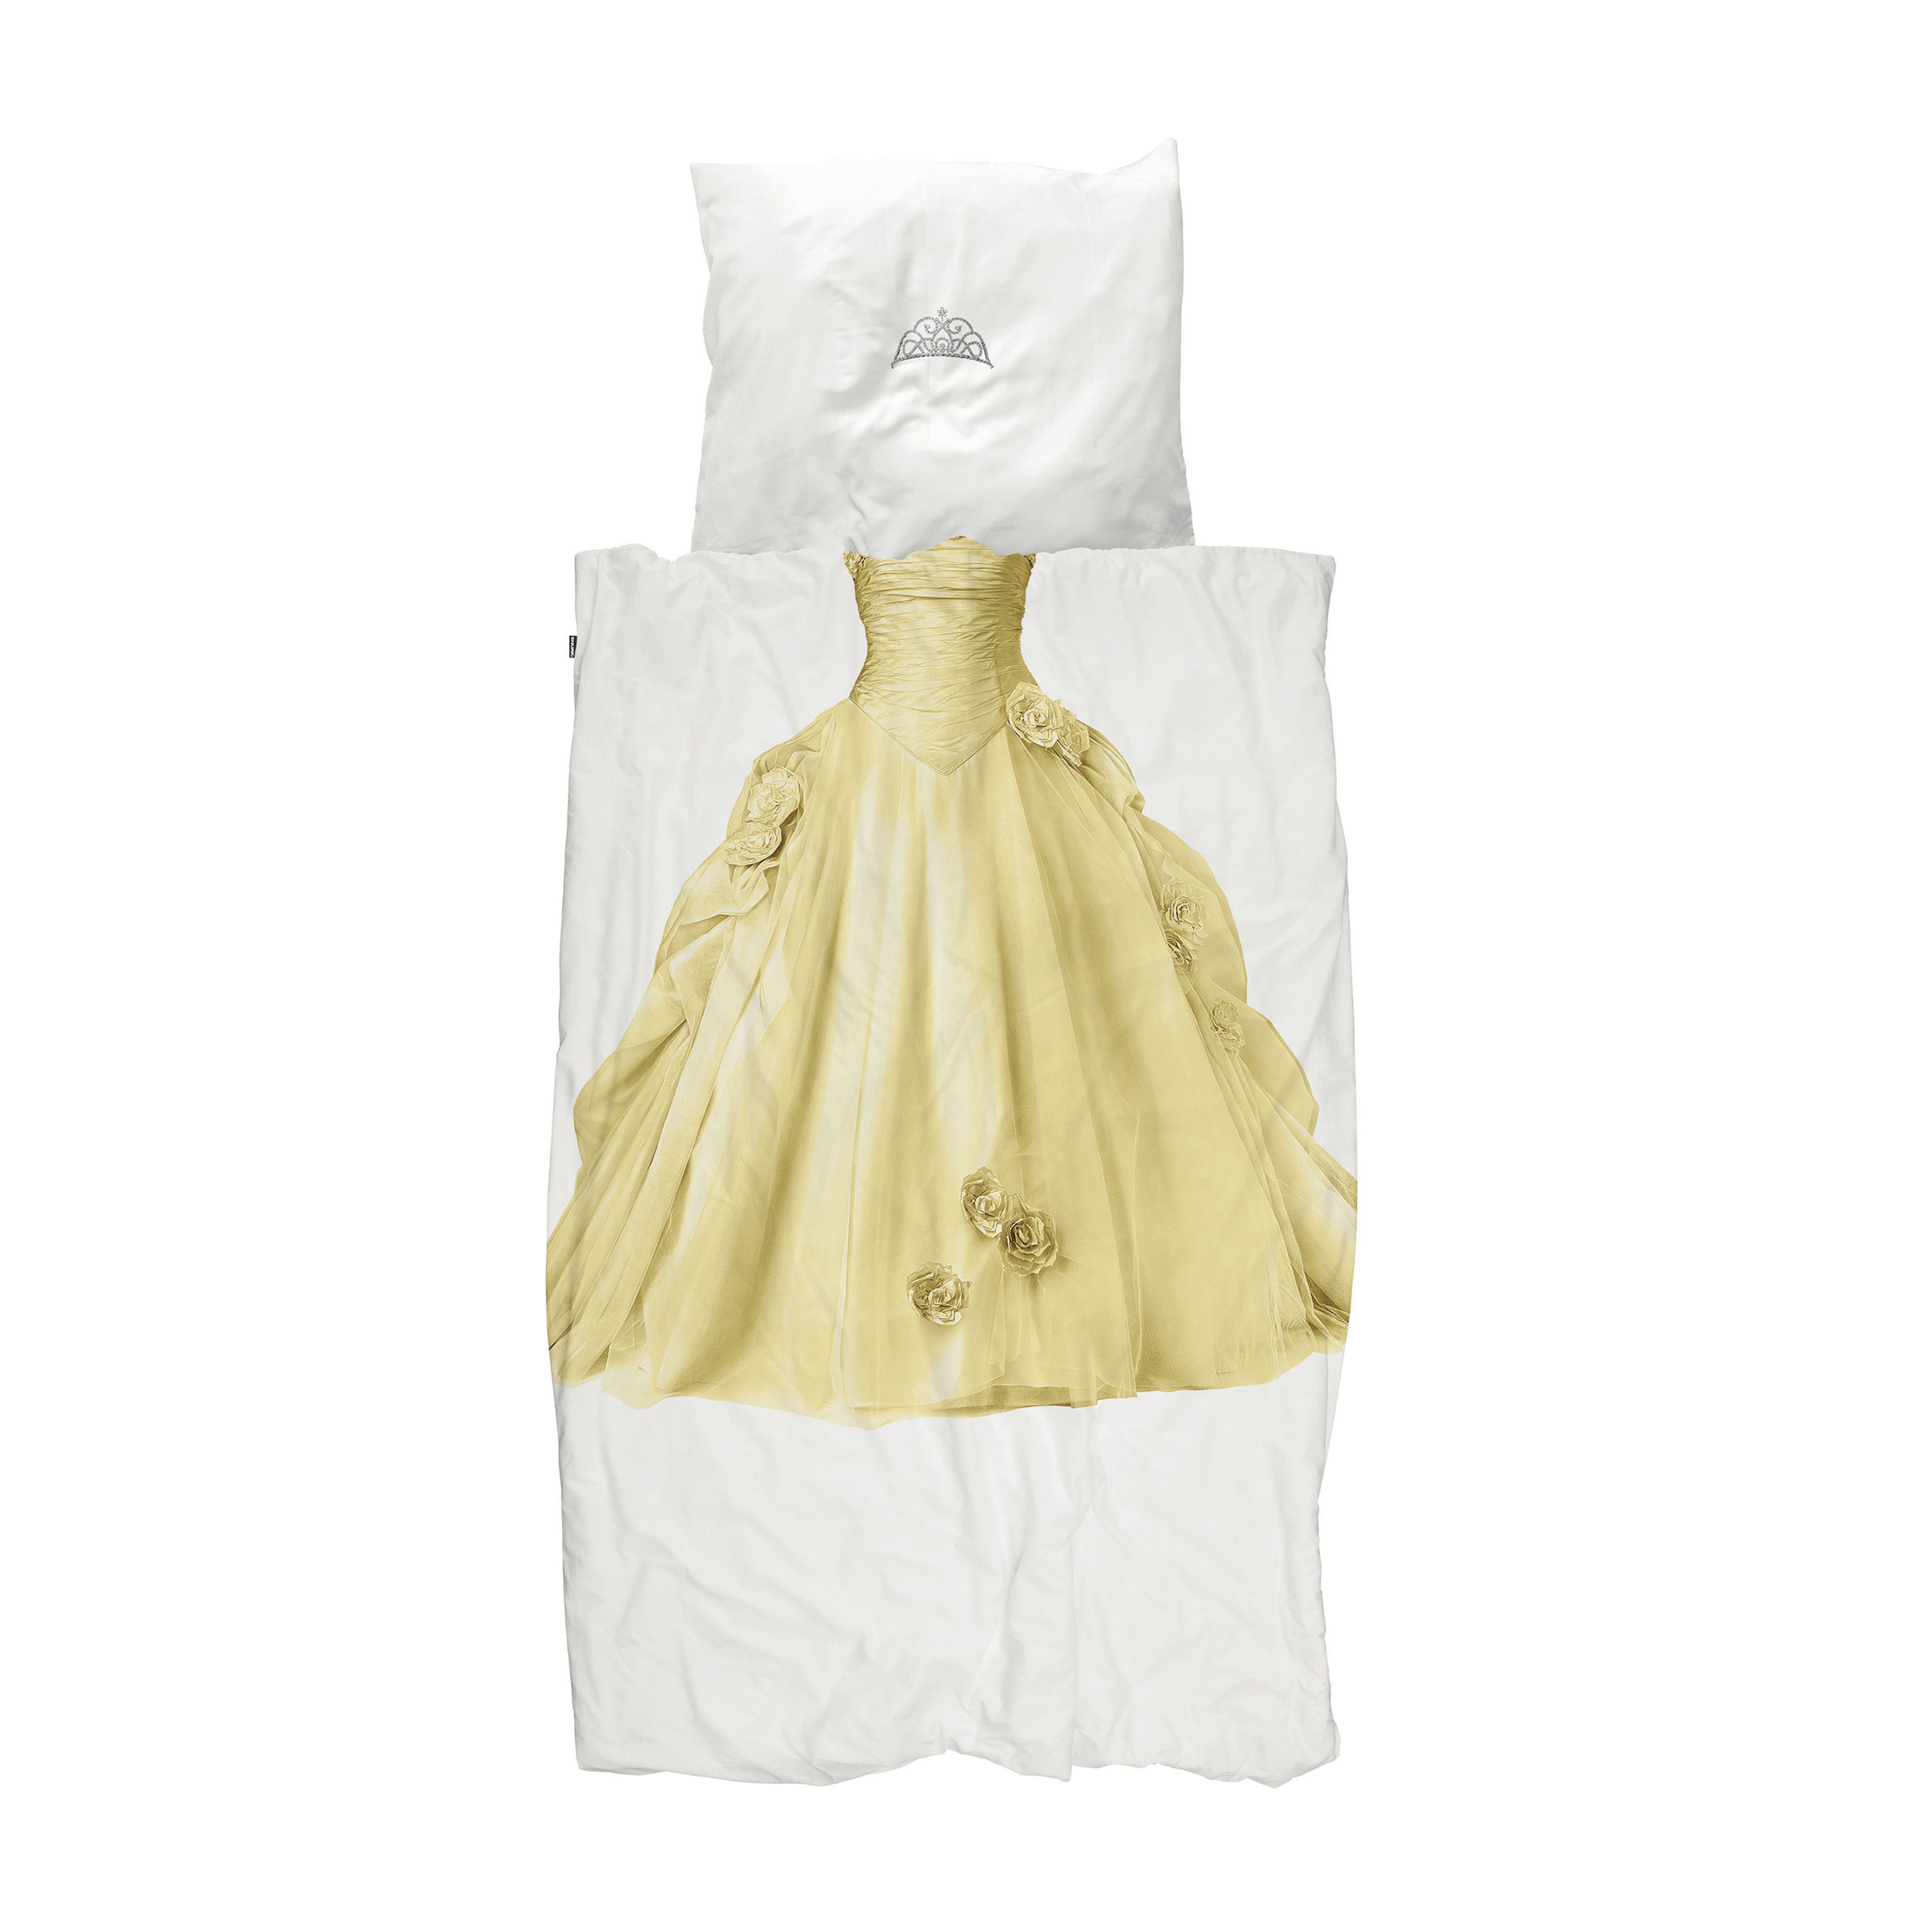 Snurk Childrens Princess Duvet Bedding Set in Yellow, Cuckooland